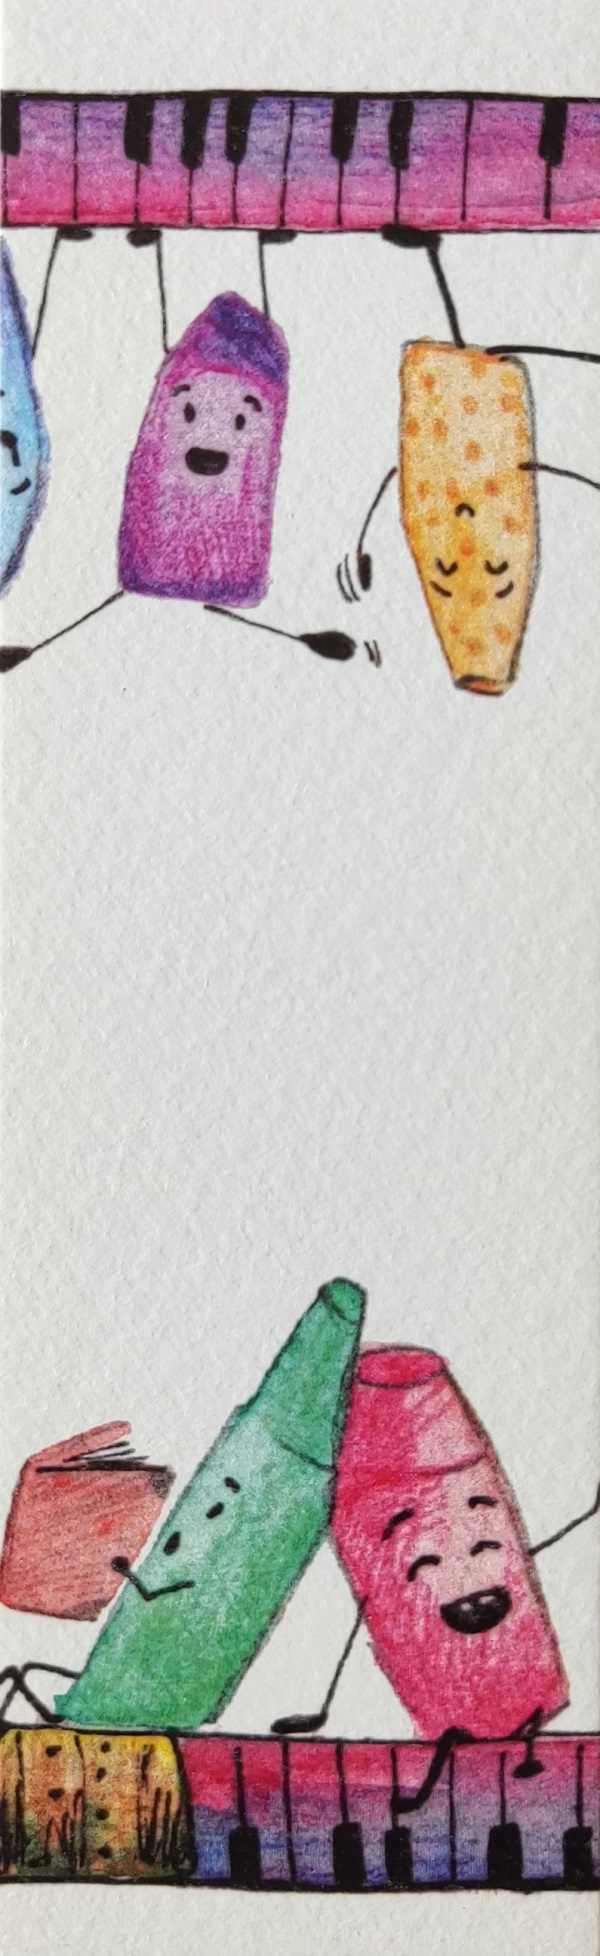 Semn de carte: Creioane colorate